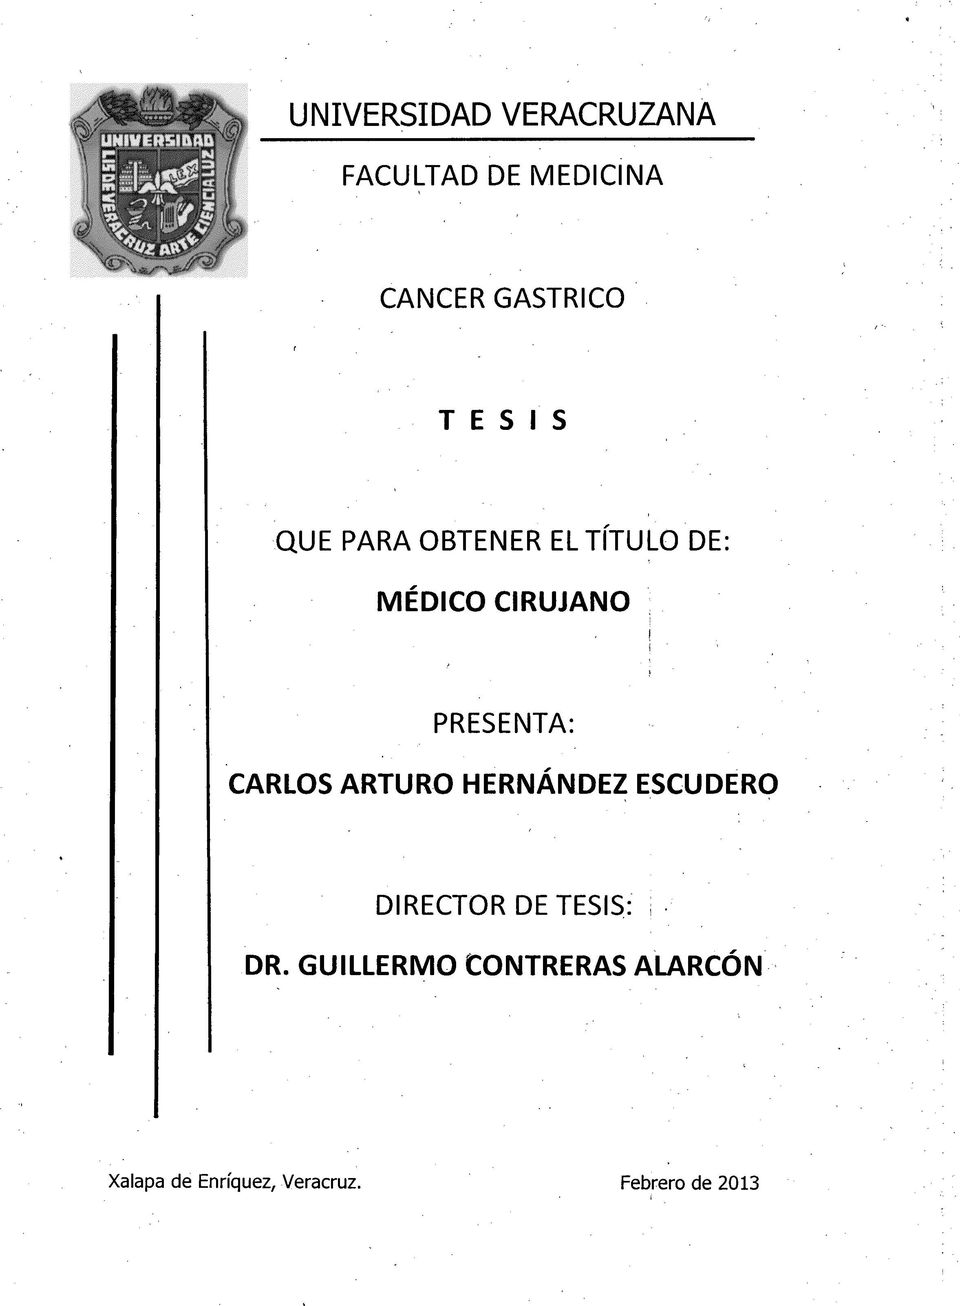 CARLOS ARTURO HERNANDEZ ESCUDERO DIRECTOR DE TESIS: i DR.